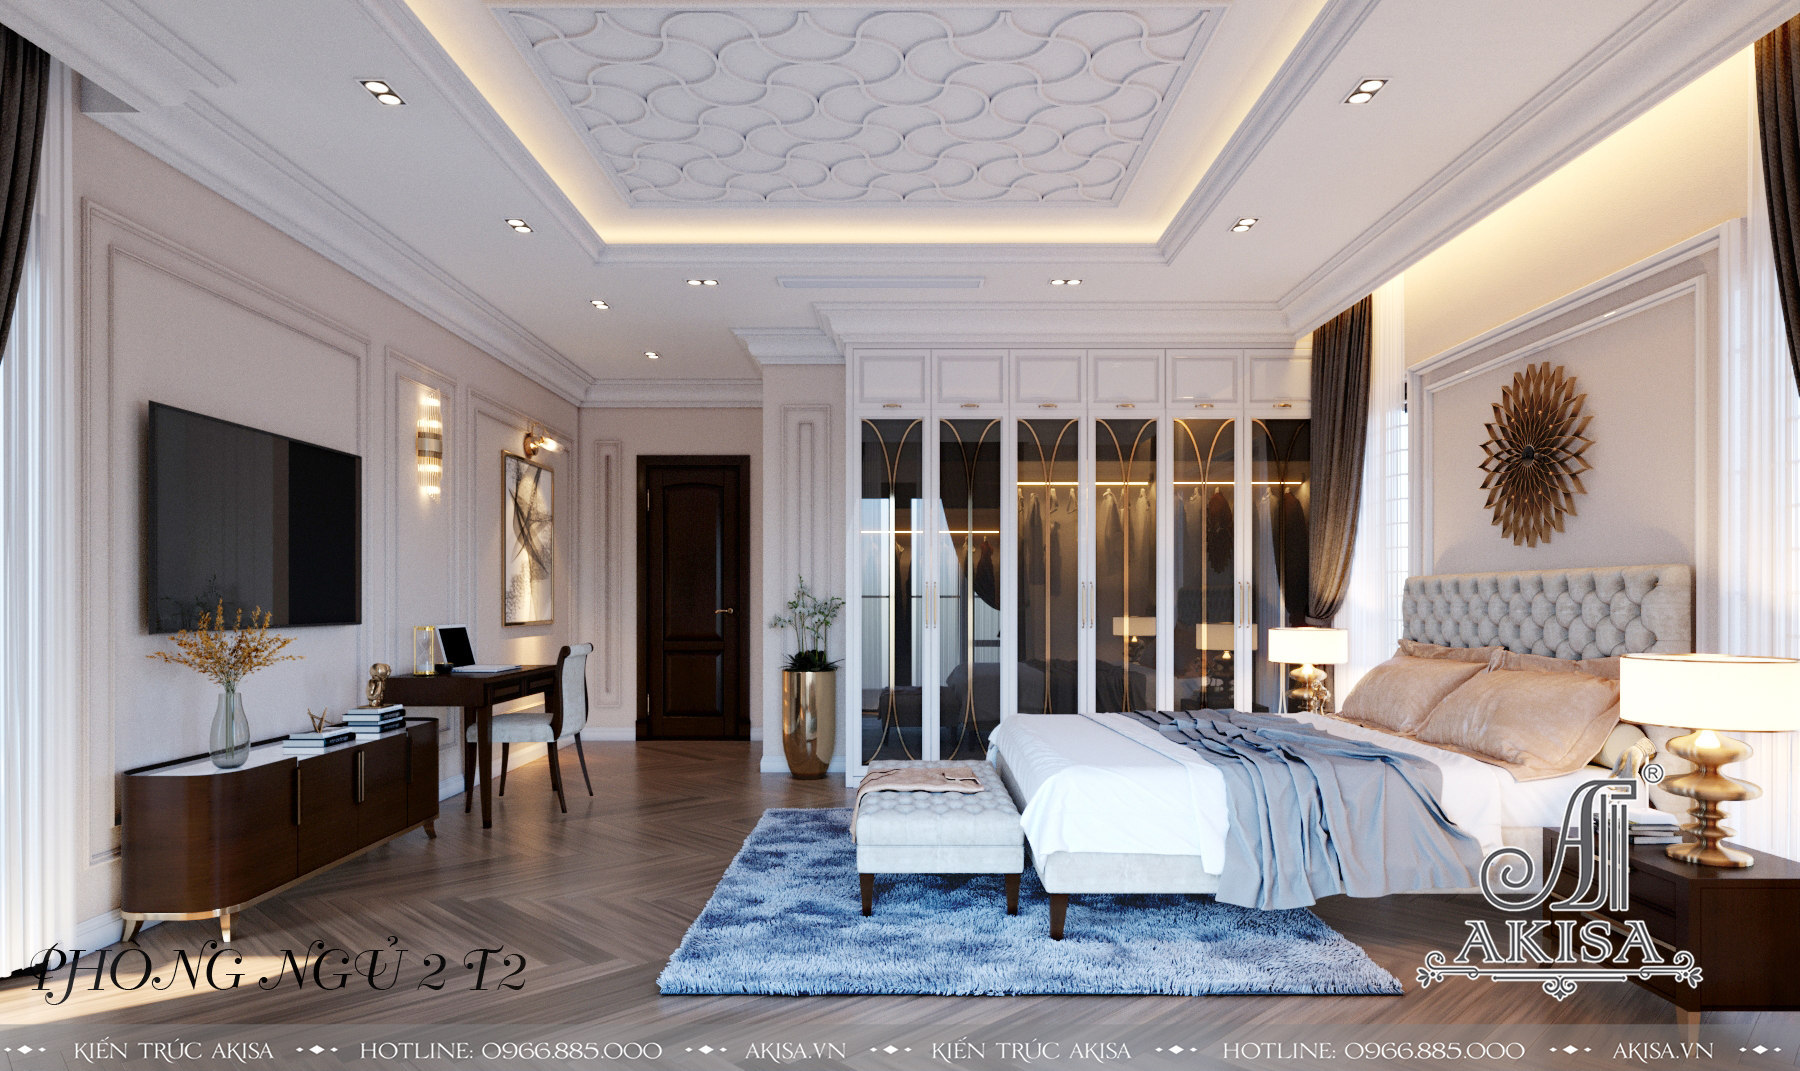 Nội thất mỗi phòng ngủ được thiết kế theo phong cách và gu thẩm mỹ riêng của từng thành viên để tạo không gian riêng thoải mái, yêu thích nhất.